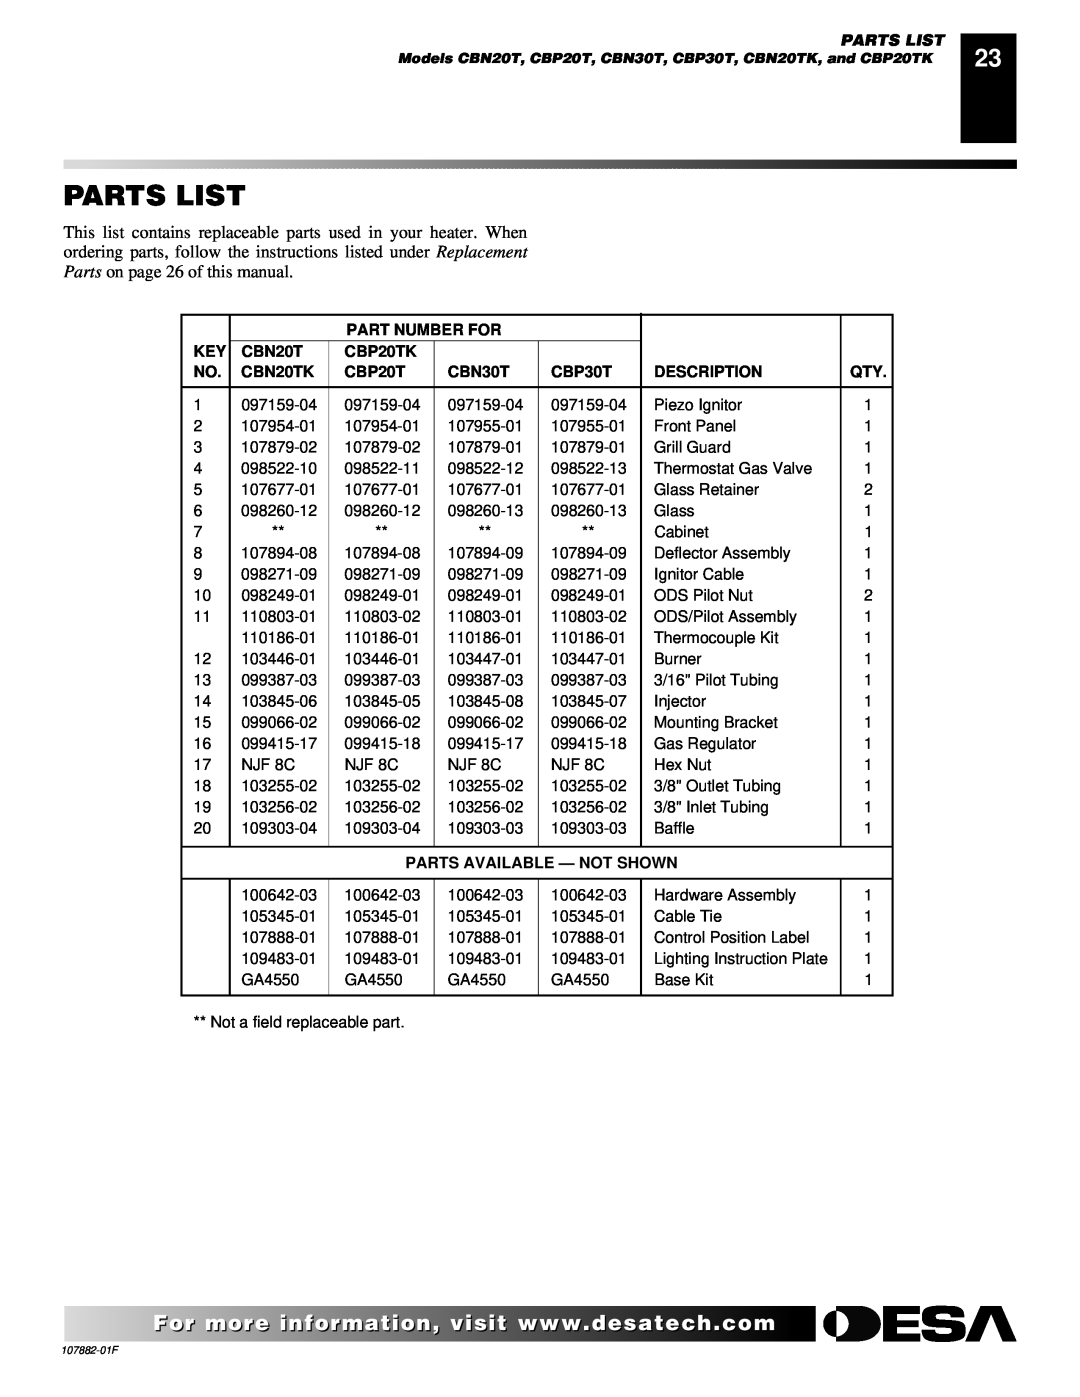 Desa Parts List, Part Number For, CBP20TK, CBN20TK, CBN30T, CBP30T, Description, Parts Available - Not Shown 